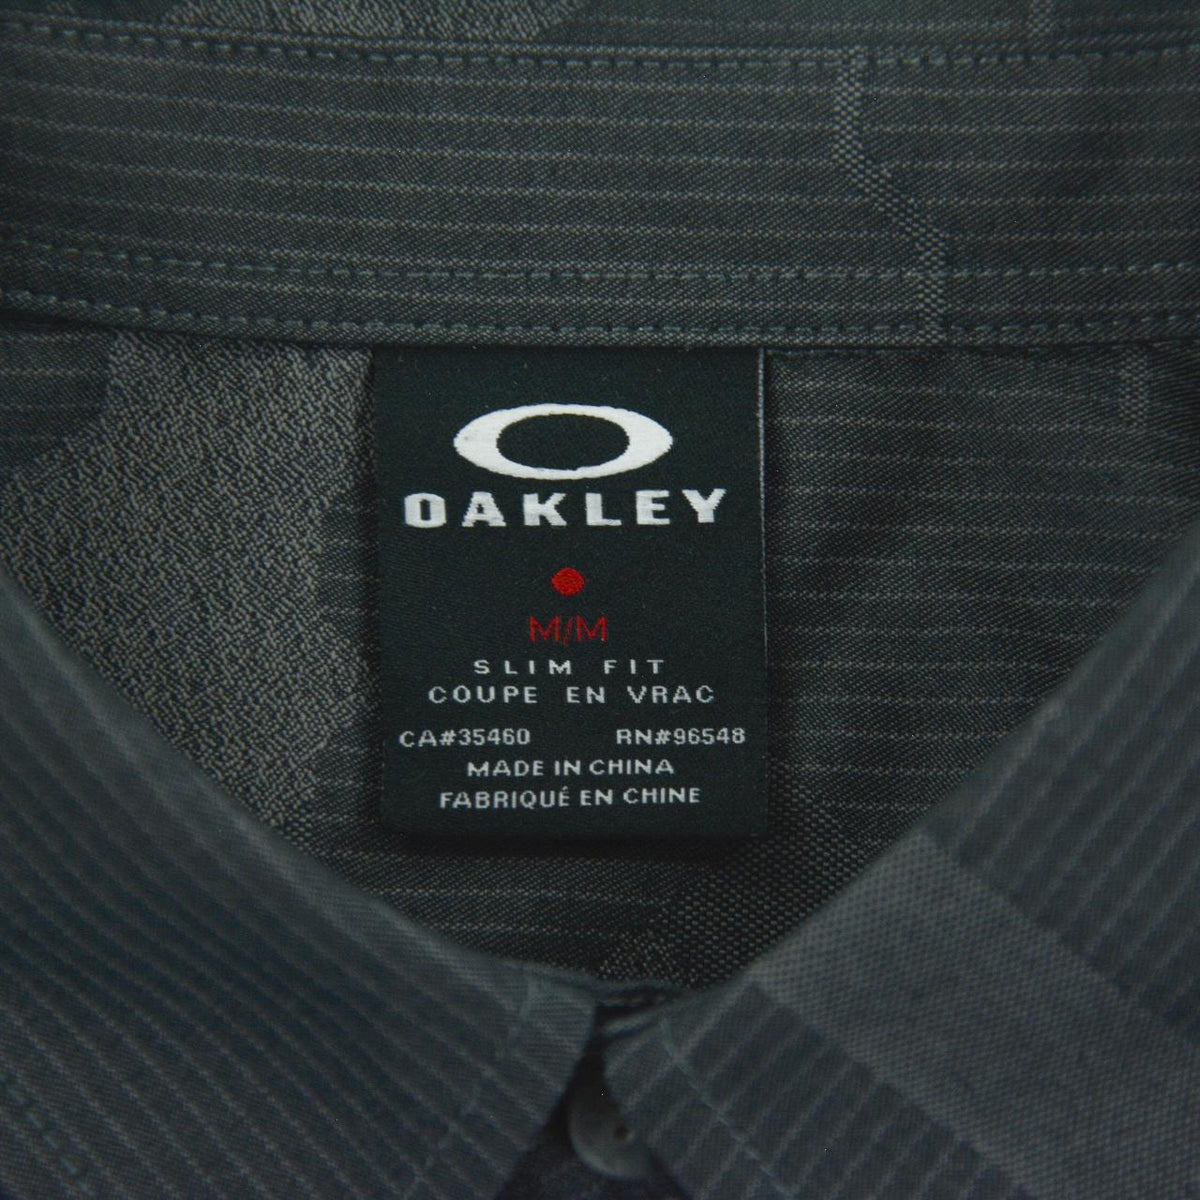 Vintage Oakley Camo Shirt Size M